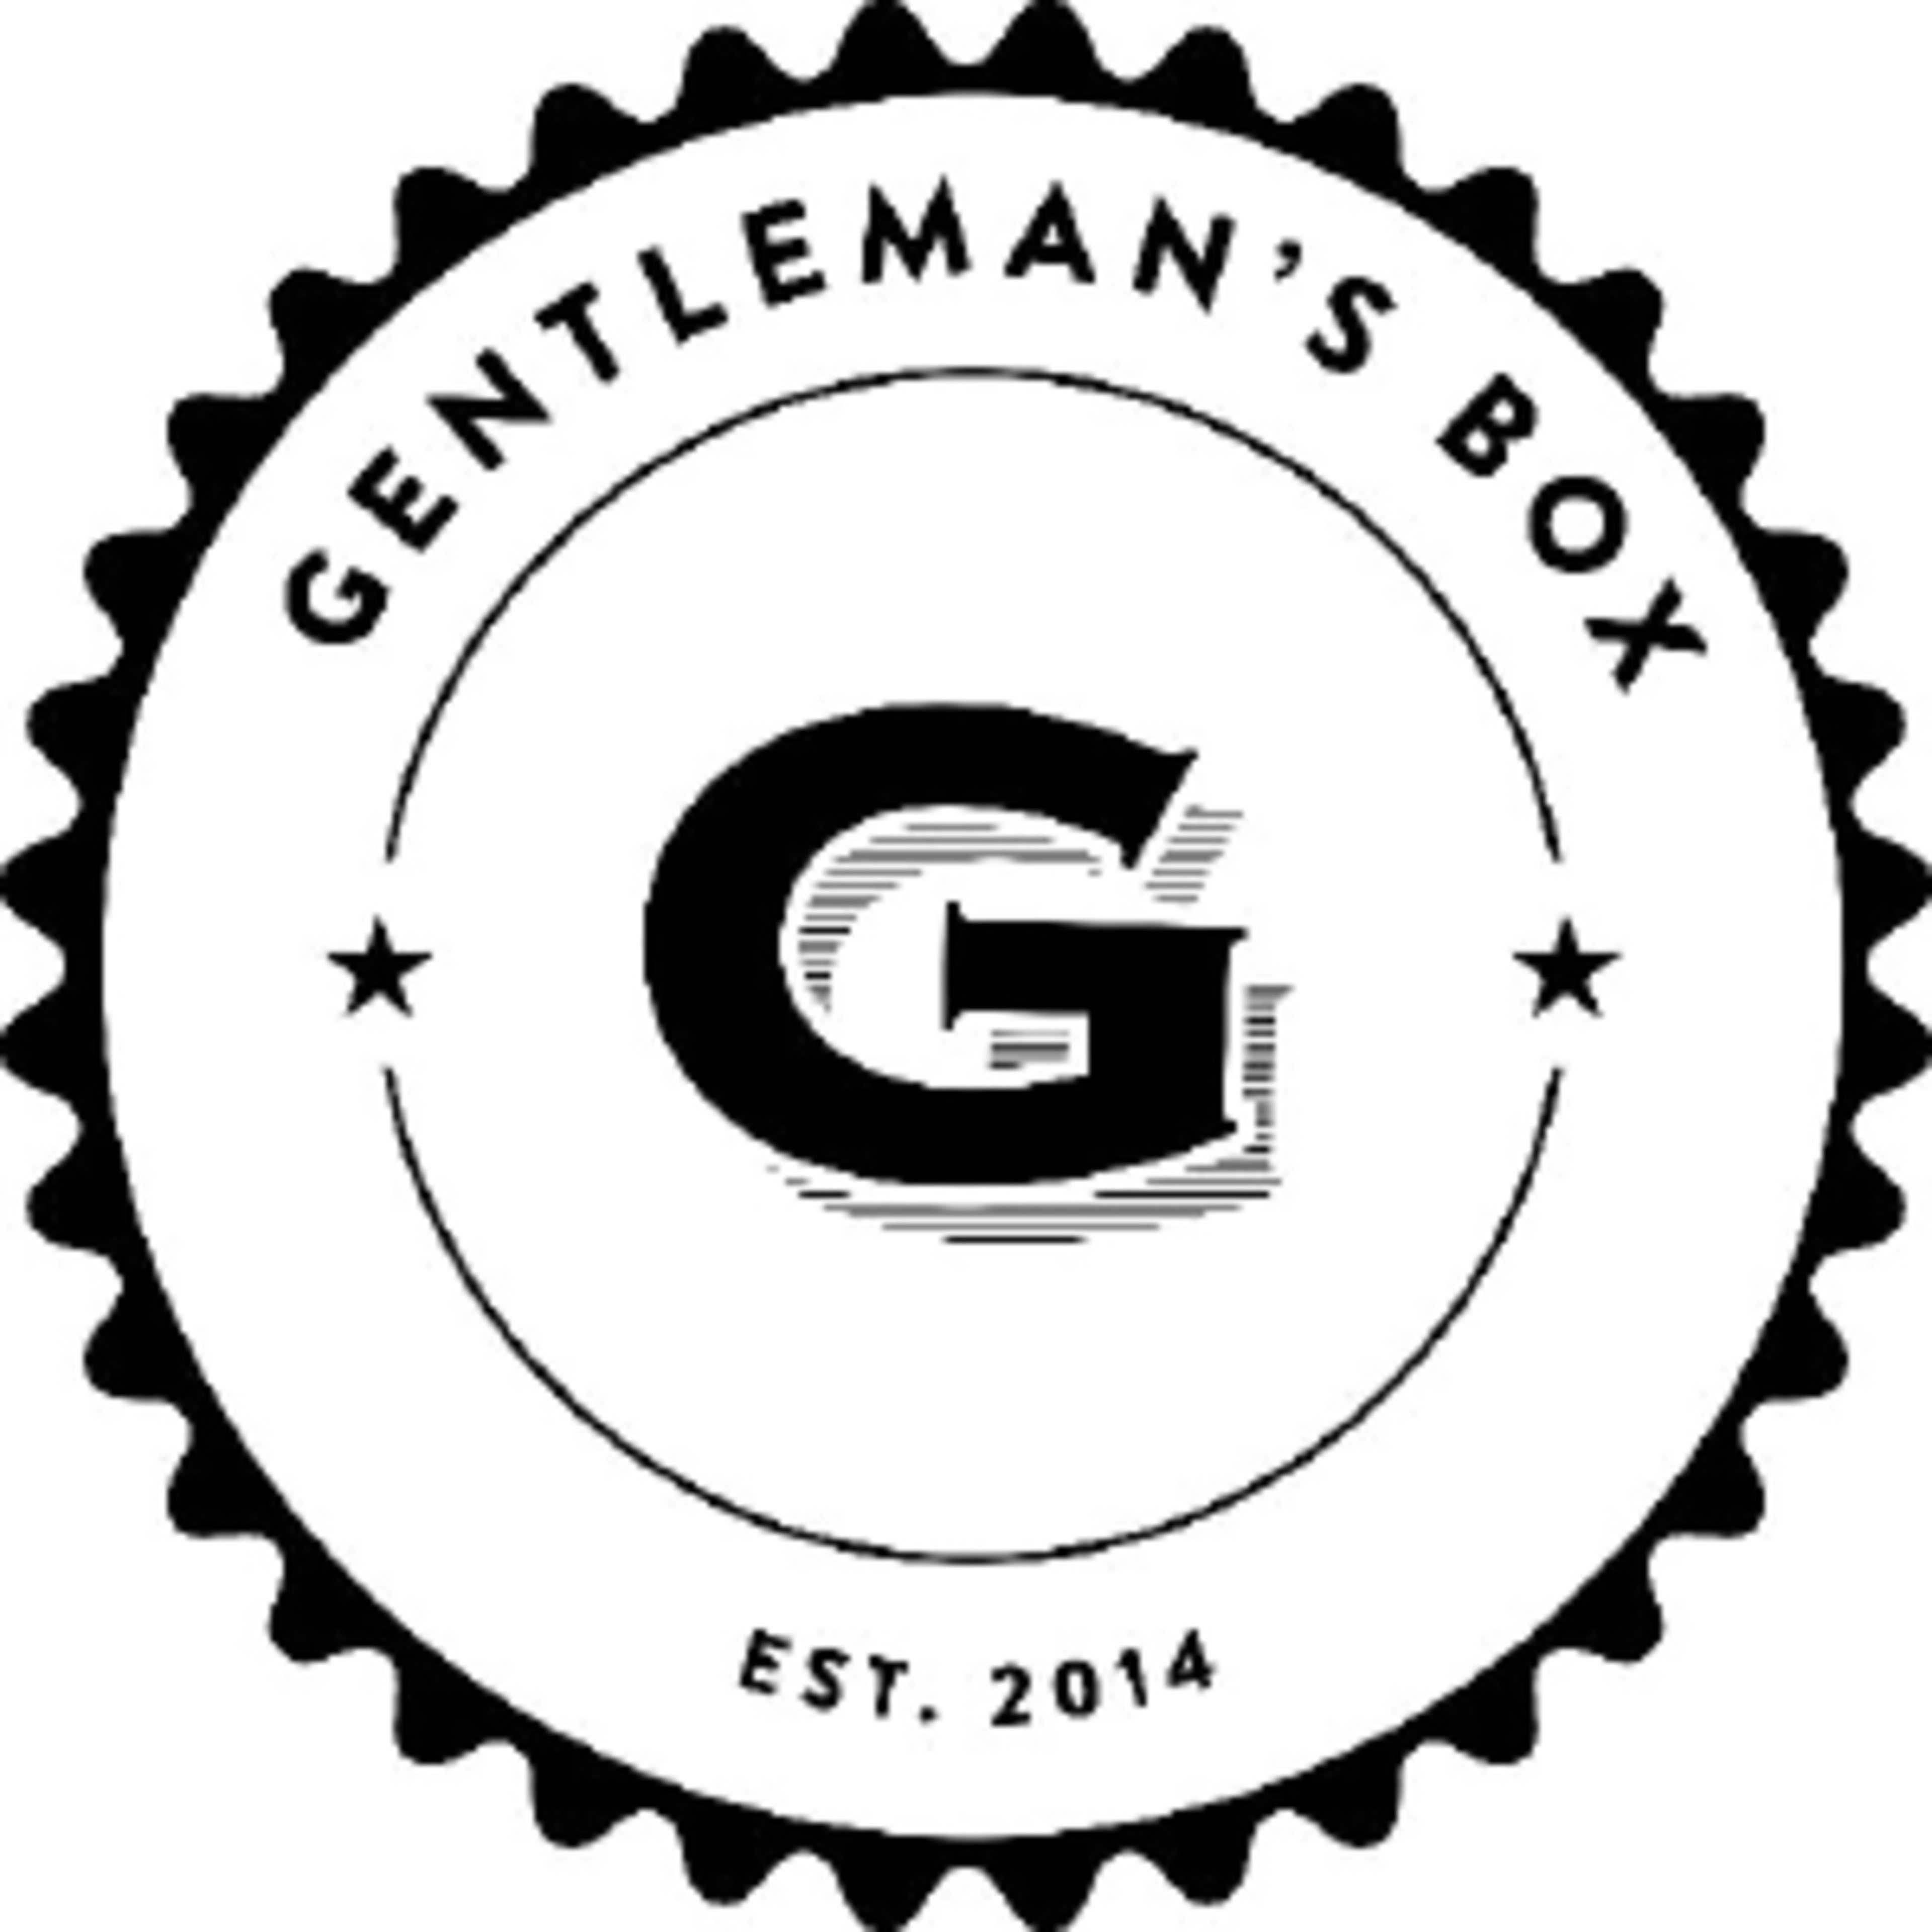 Gentleman's BoxCode